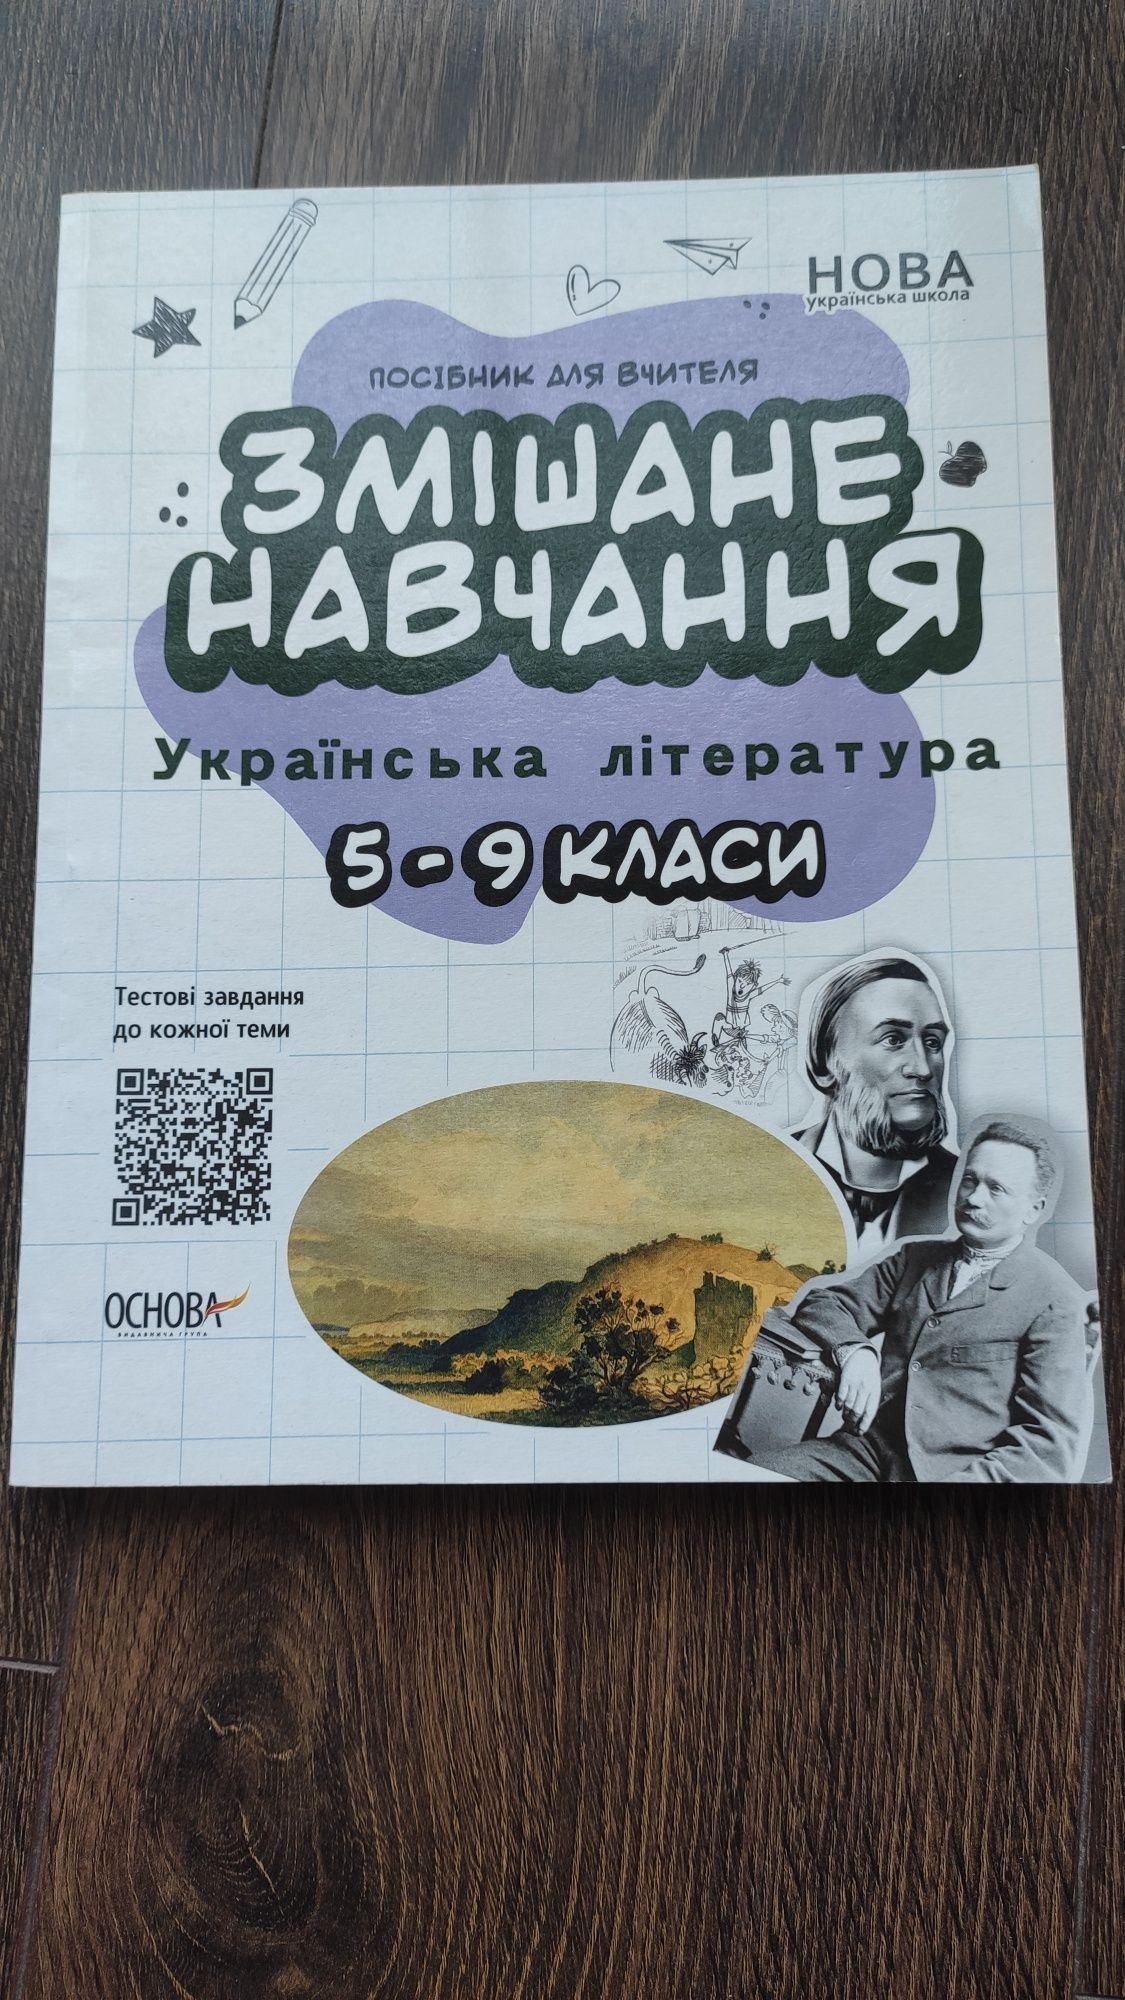 Посібники "Змішане навчання" українська мова та література